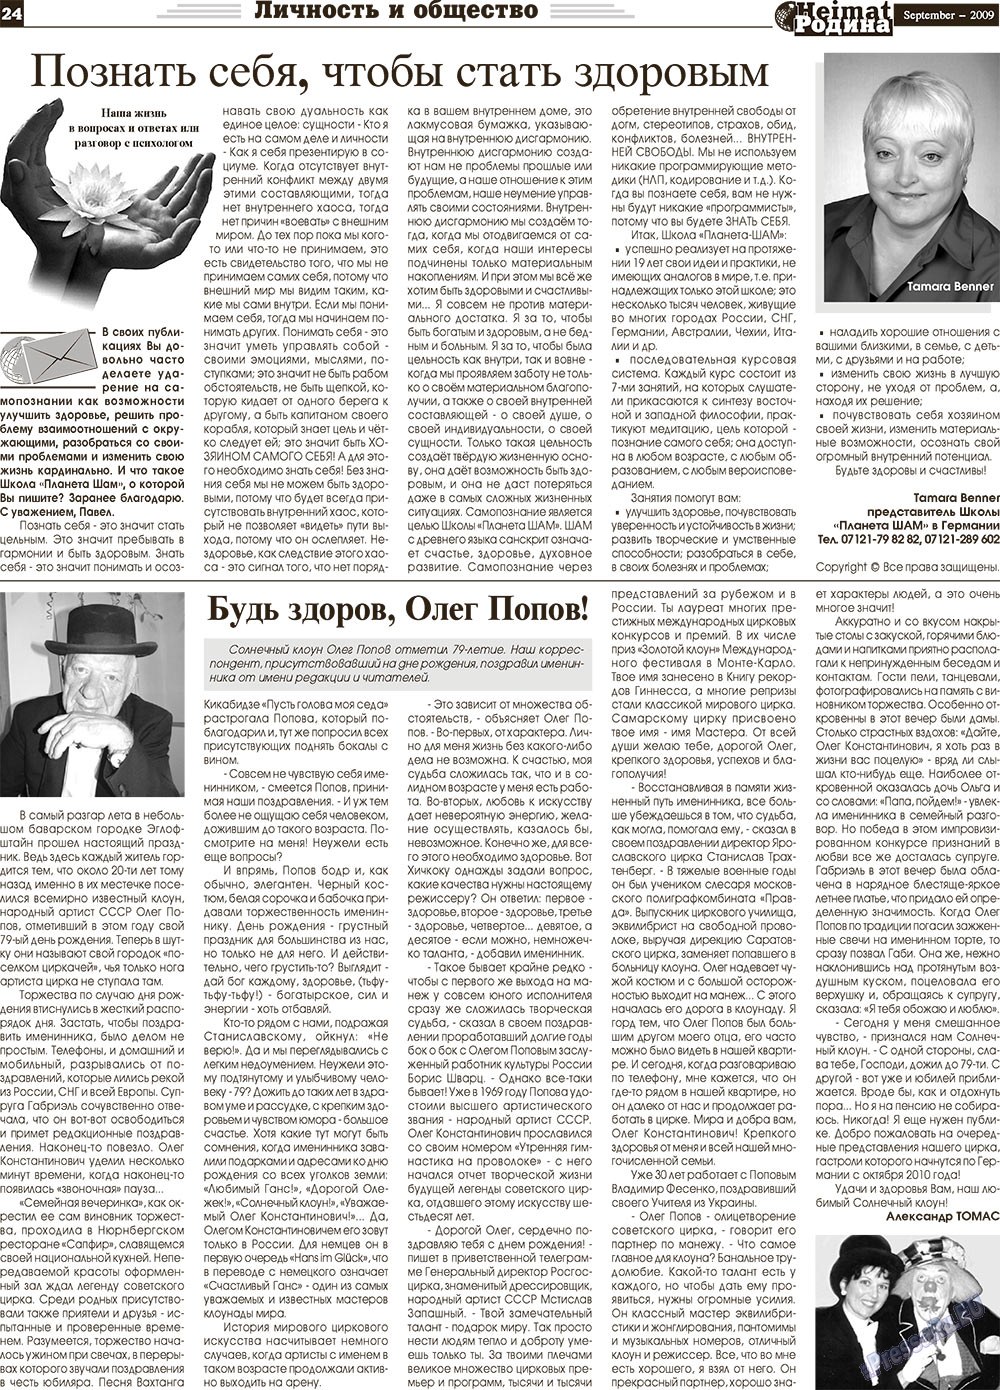 Heimat-Родина (газета). 2009 год, номер 9, стр. 24